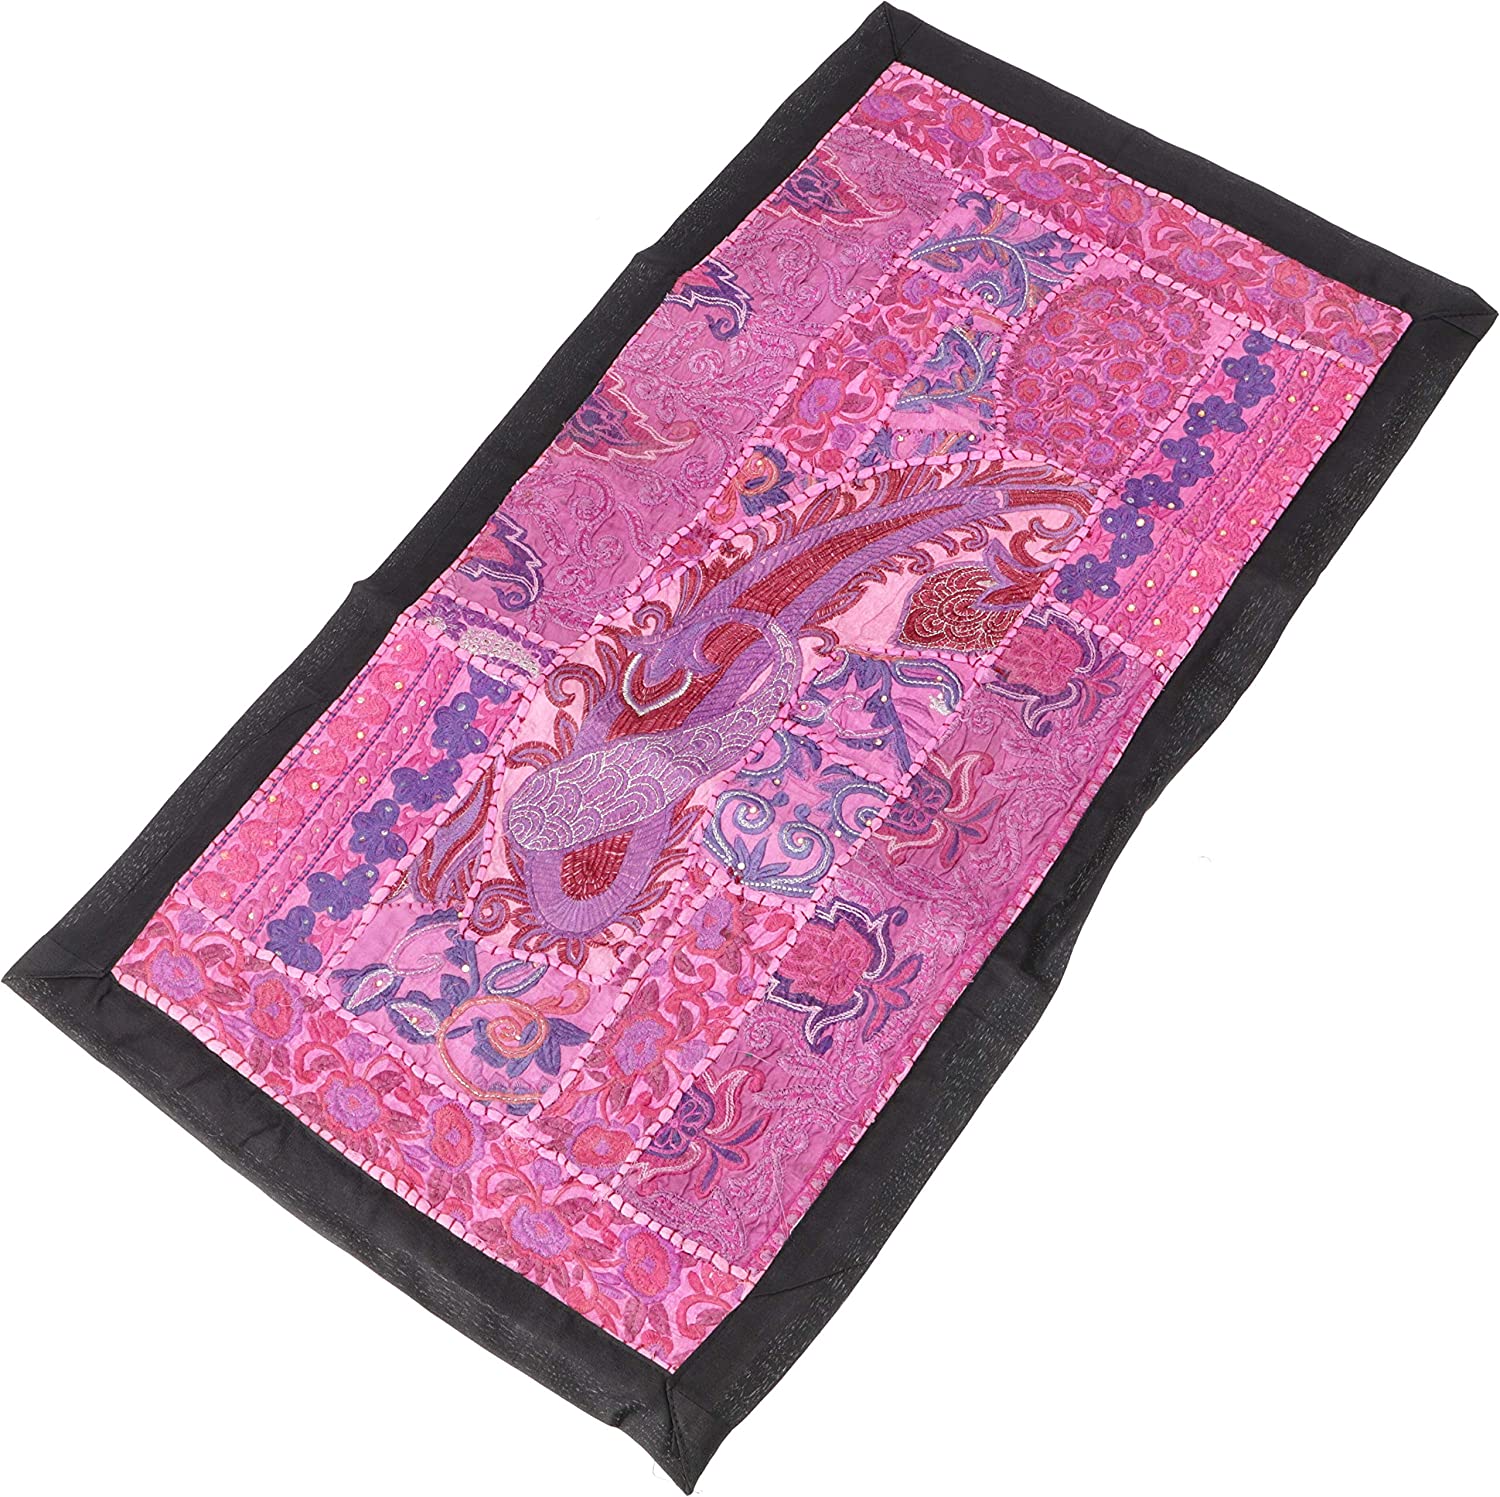 Guru-Shop GURU SHOP Oriental Table Runner, Wall Hanging, Single Piece, 85 x 45 cm, Motif 2, Pink, Cotton, Wall Bags & Wall Hangings